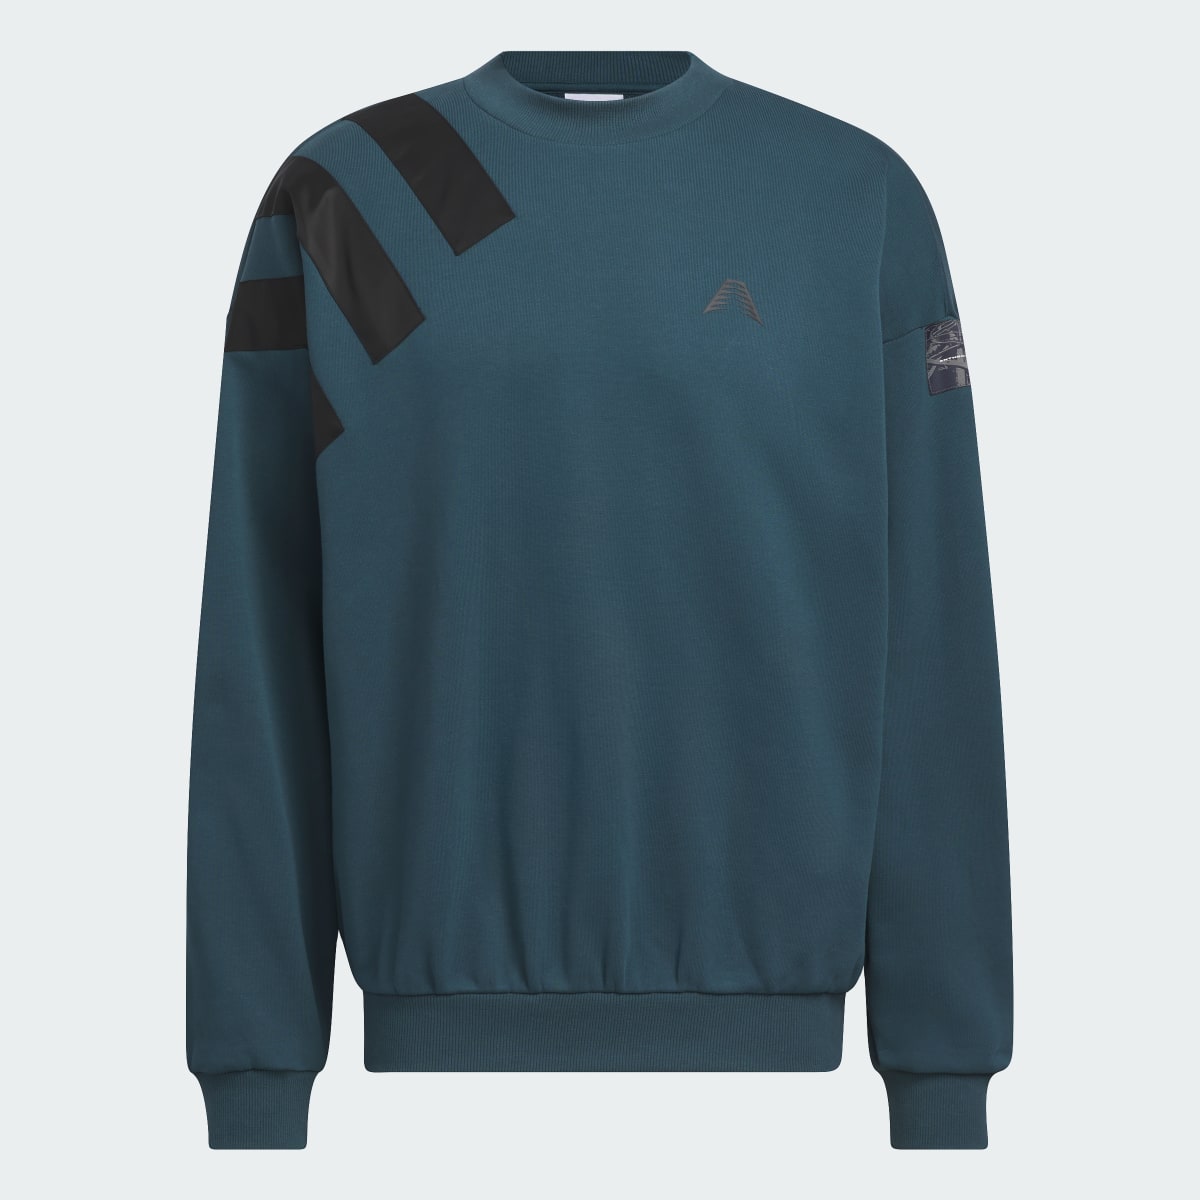 Adidas AE Foundation Crew Sweatshirt. 5